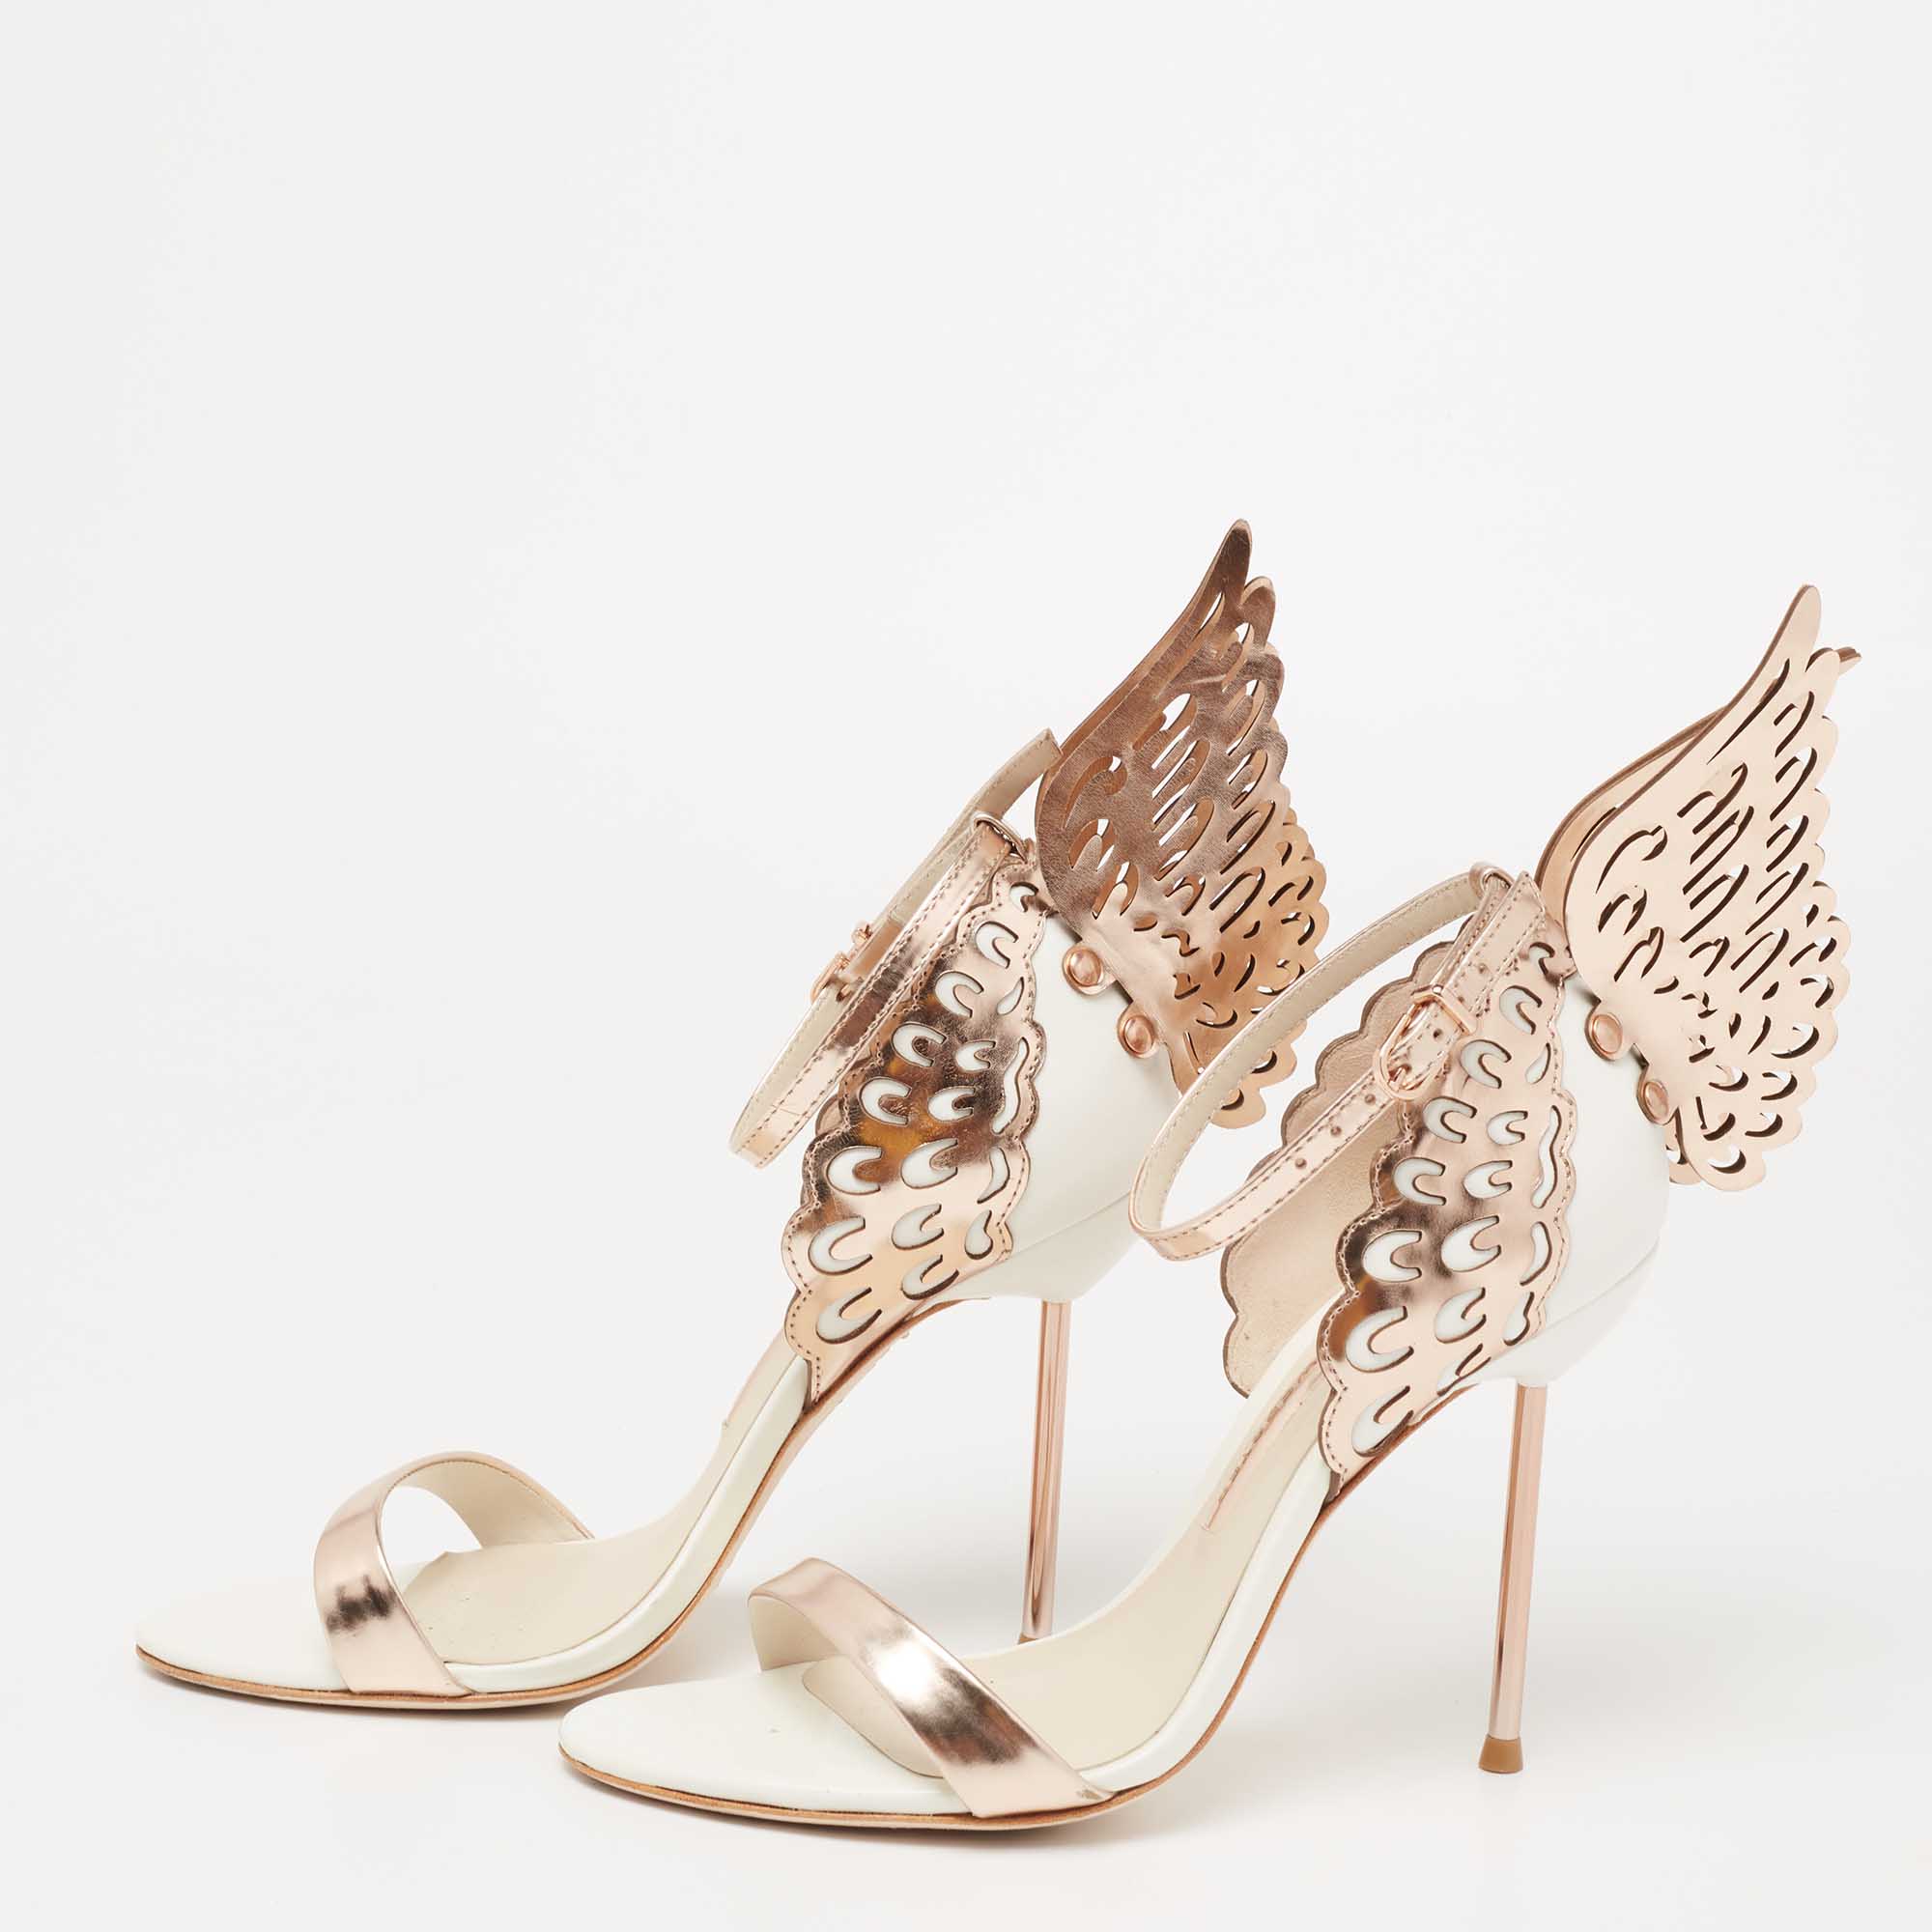 

Sophia Webster Rose Gold/White Leather Evangeline Ankle-Strap Sandals Size